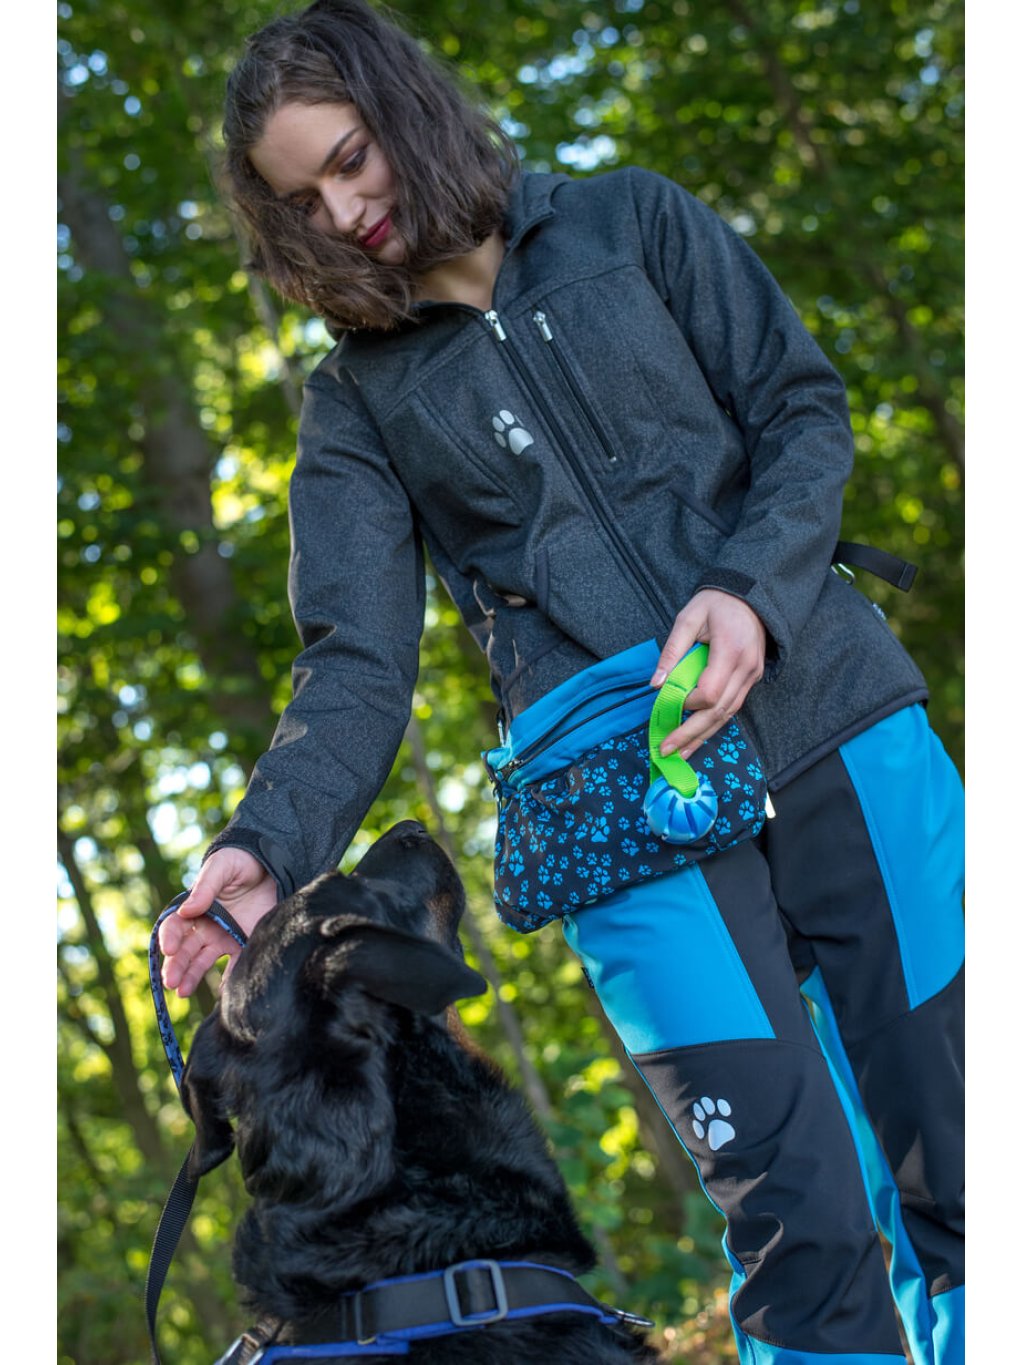 Dog training treat pouch XL Aqua